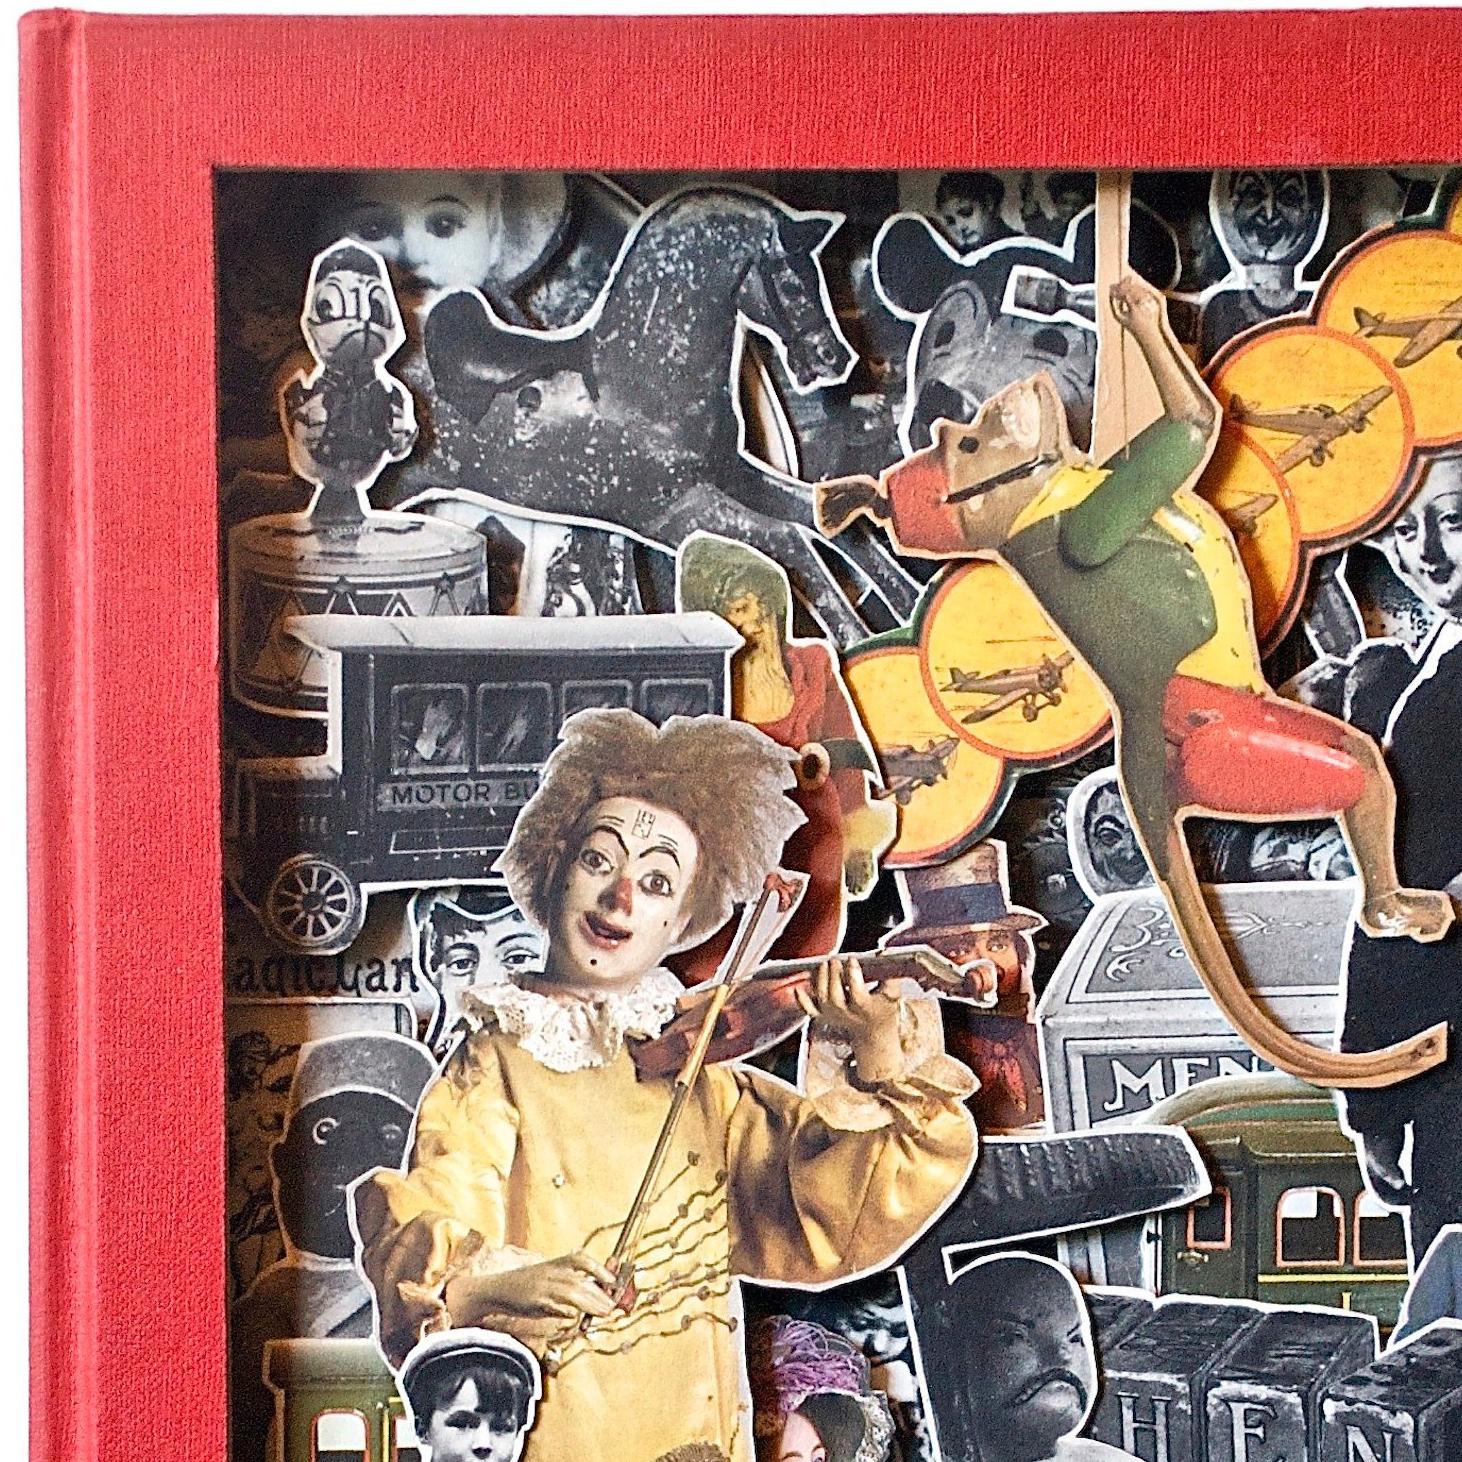 Encyclopedia of Toys - Contemporary Mixed Media Art by Tony Dagradi